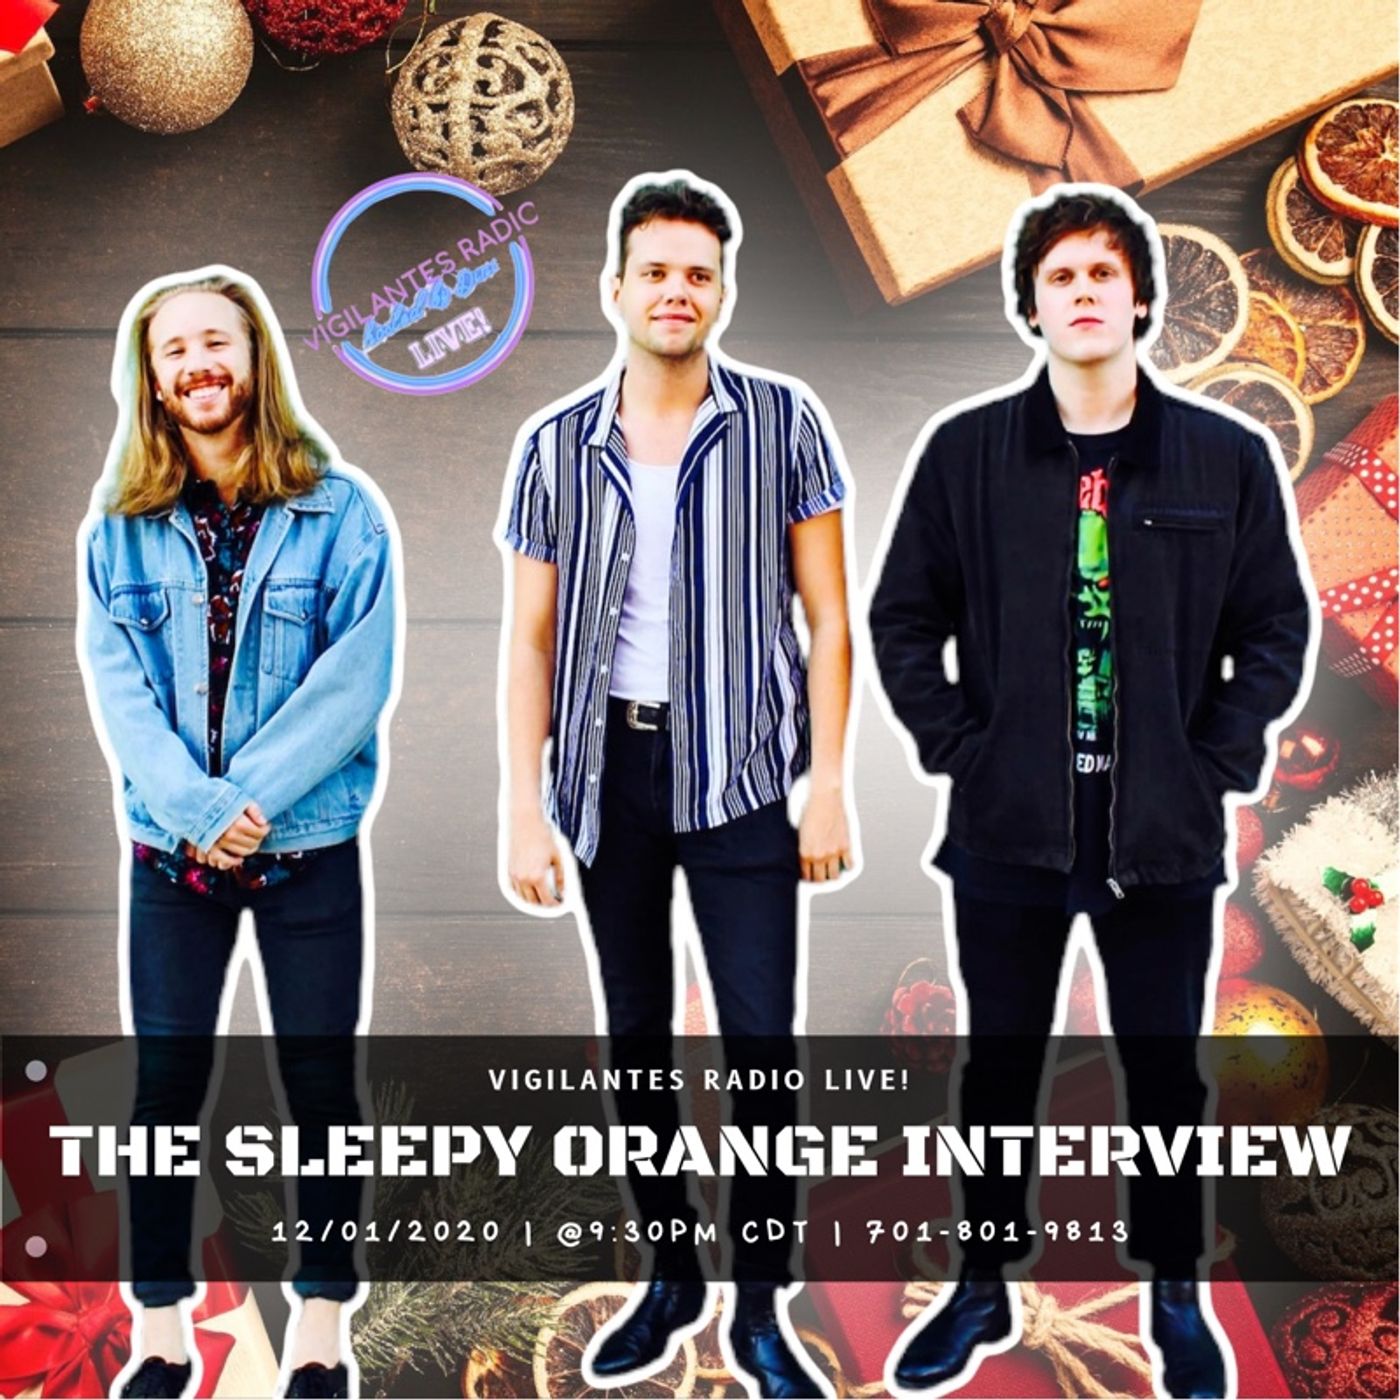 The Sleepy Orange Interview. Image